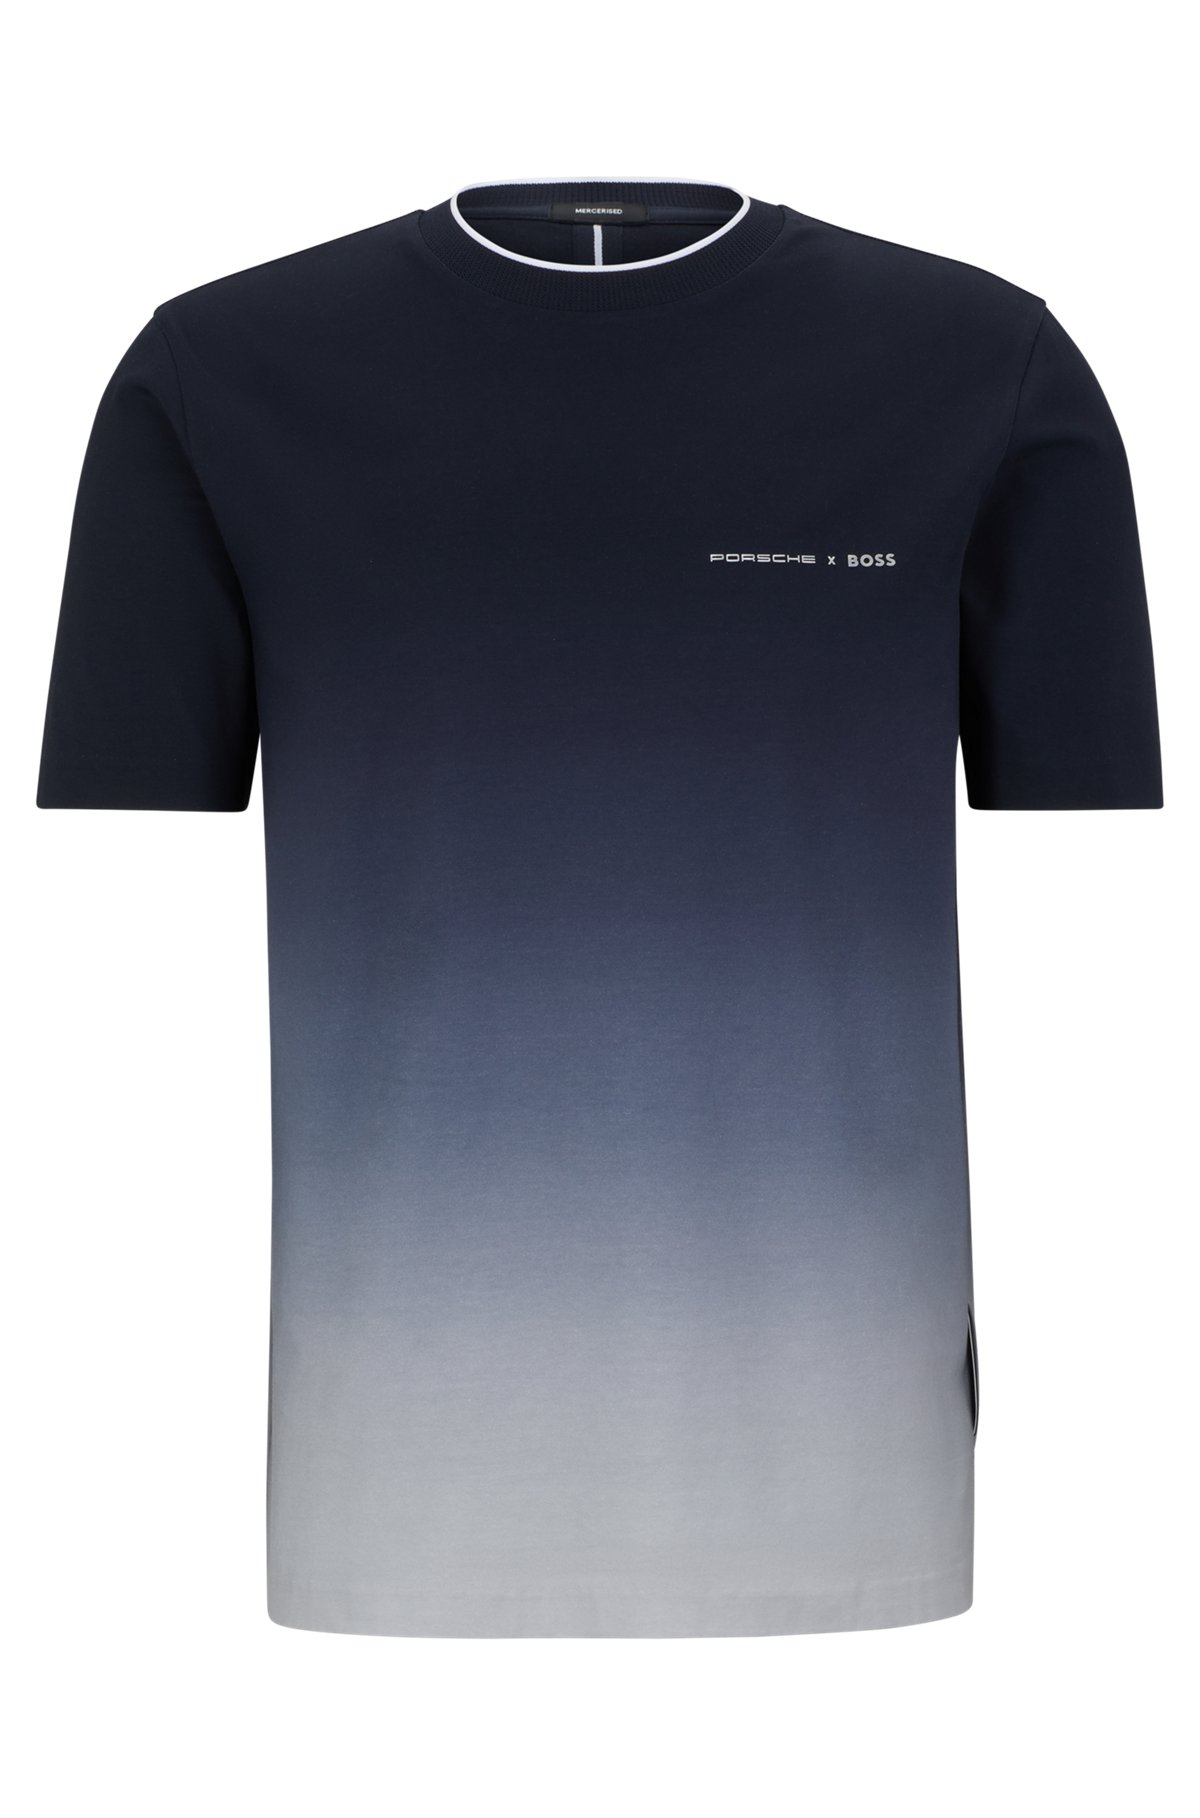 Porsche x BOSS stretch-cotton T-shirt with degradé print, Dark Blue